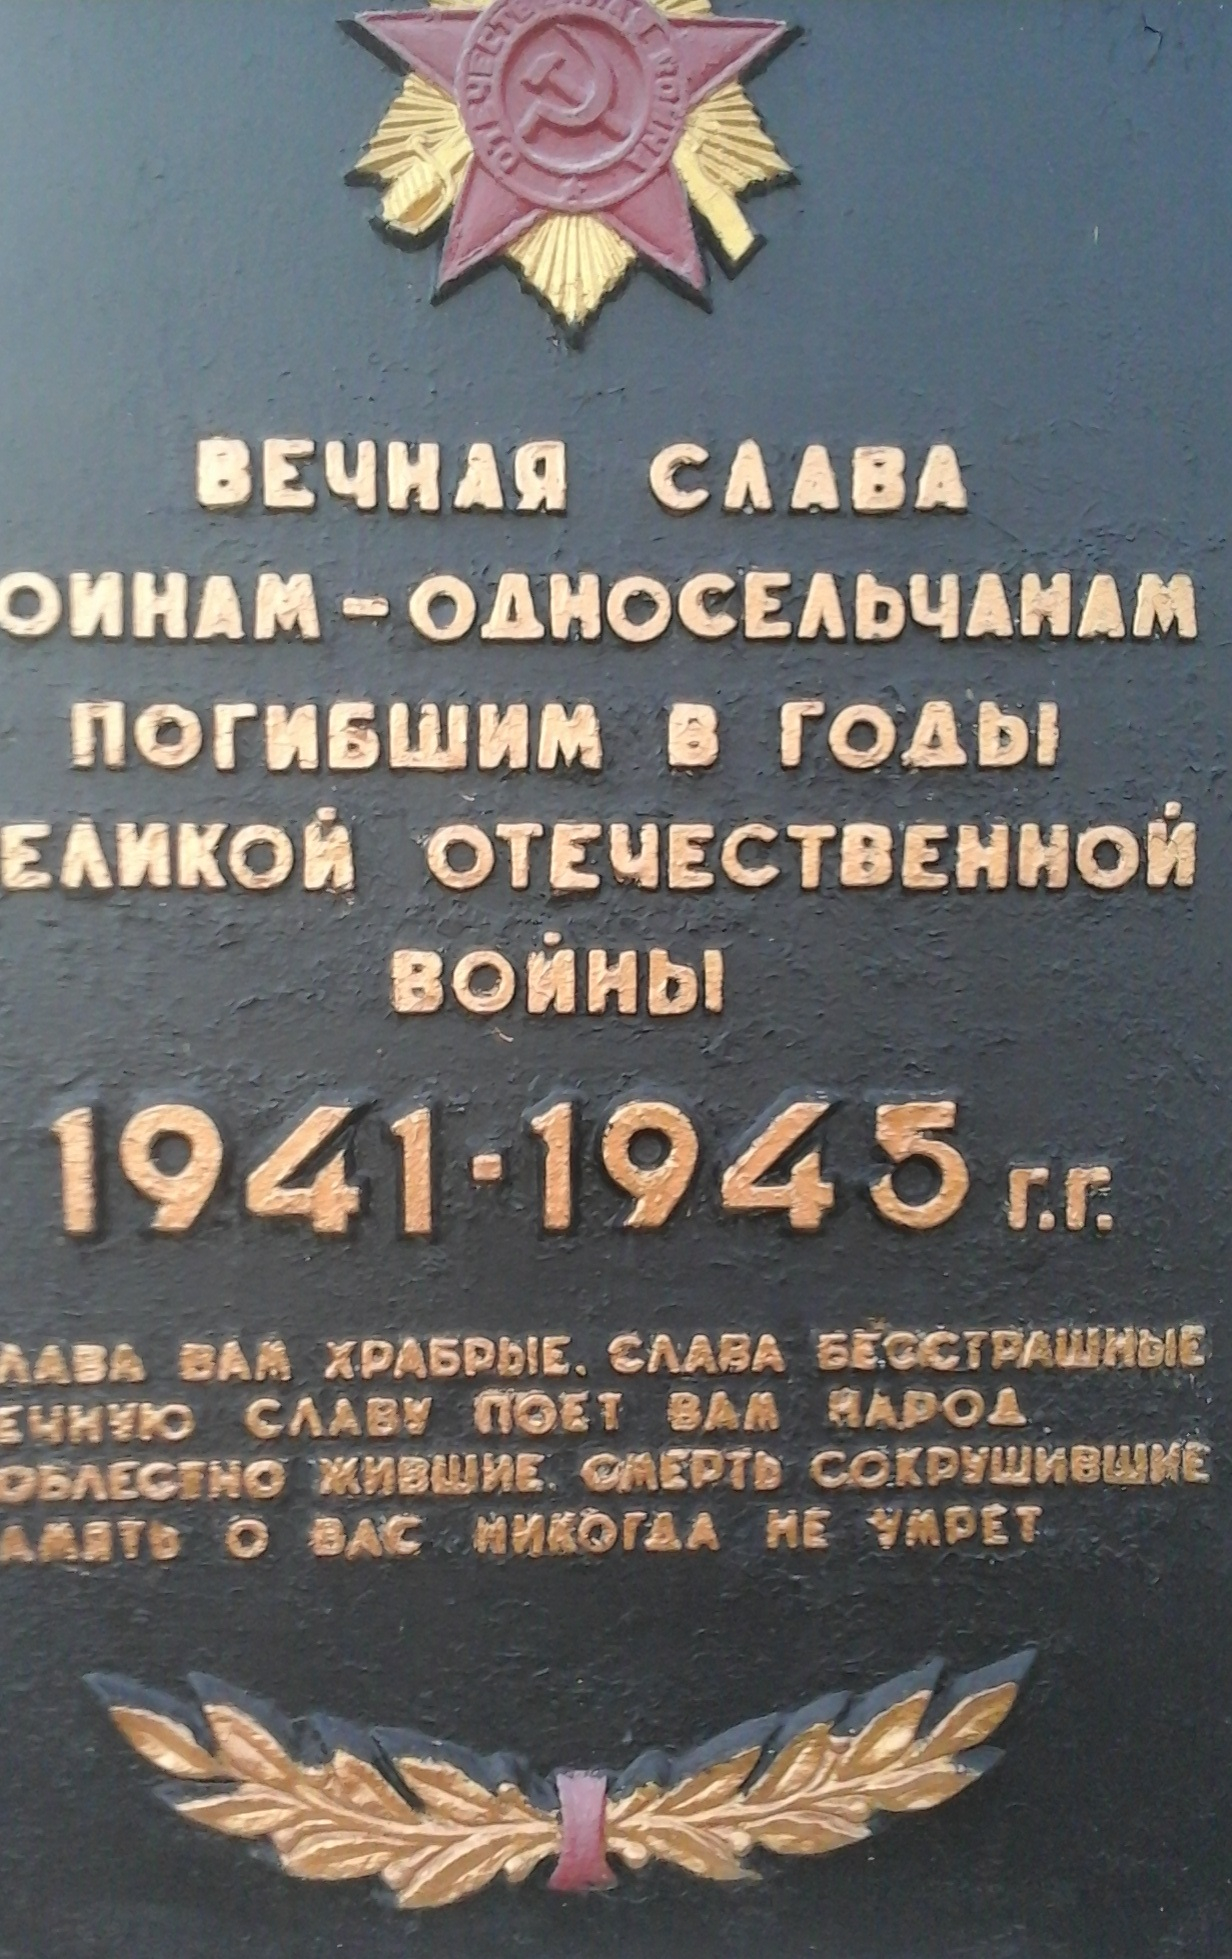 Братская могила в с. Магдалиновка Ореховского района